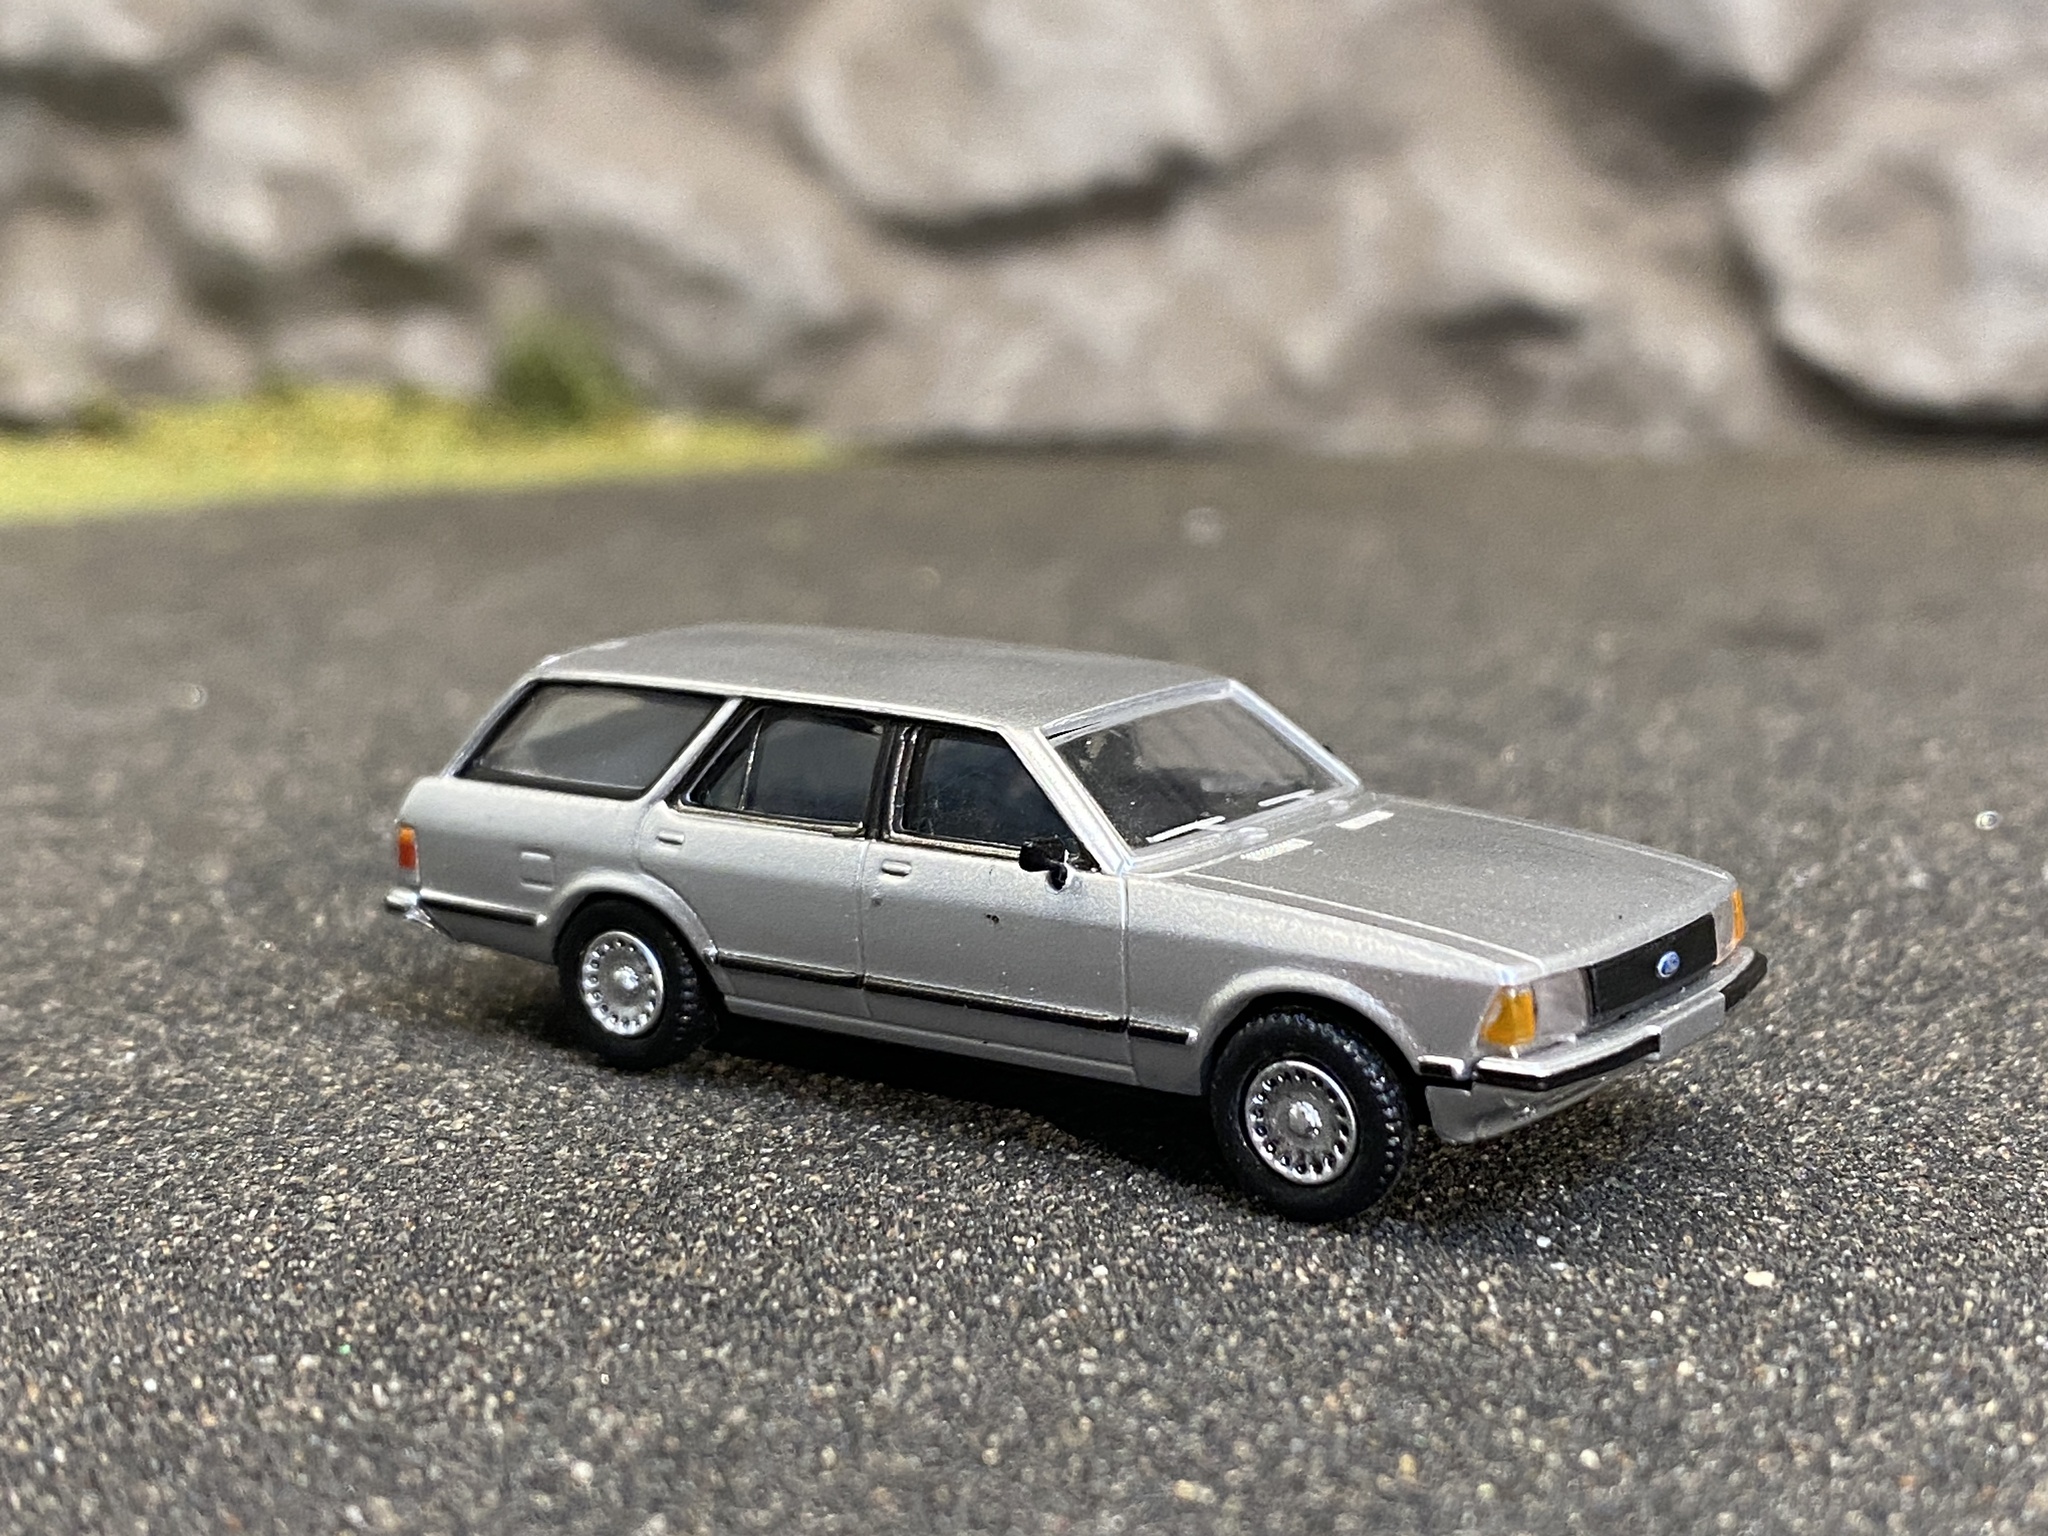 Skala 1/87 - Ford Granada Mk I Turnier, Silver från Brekina